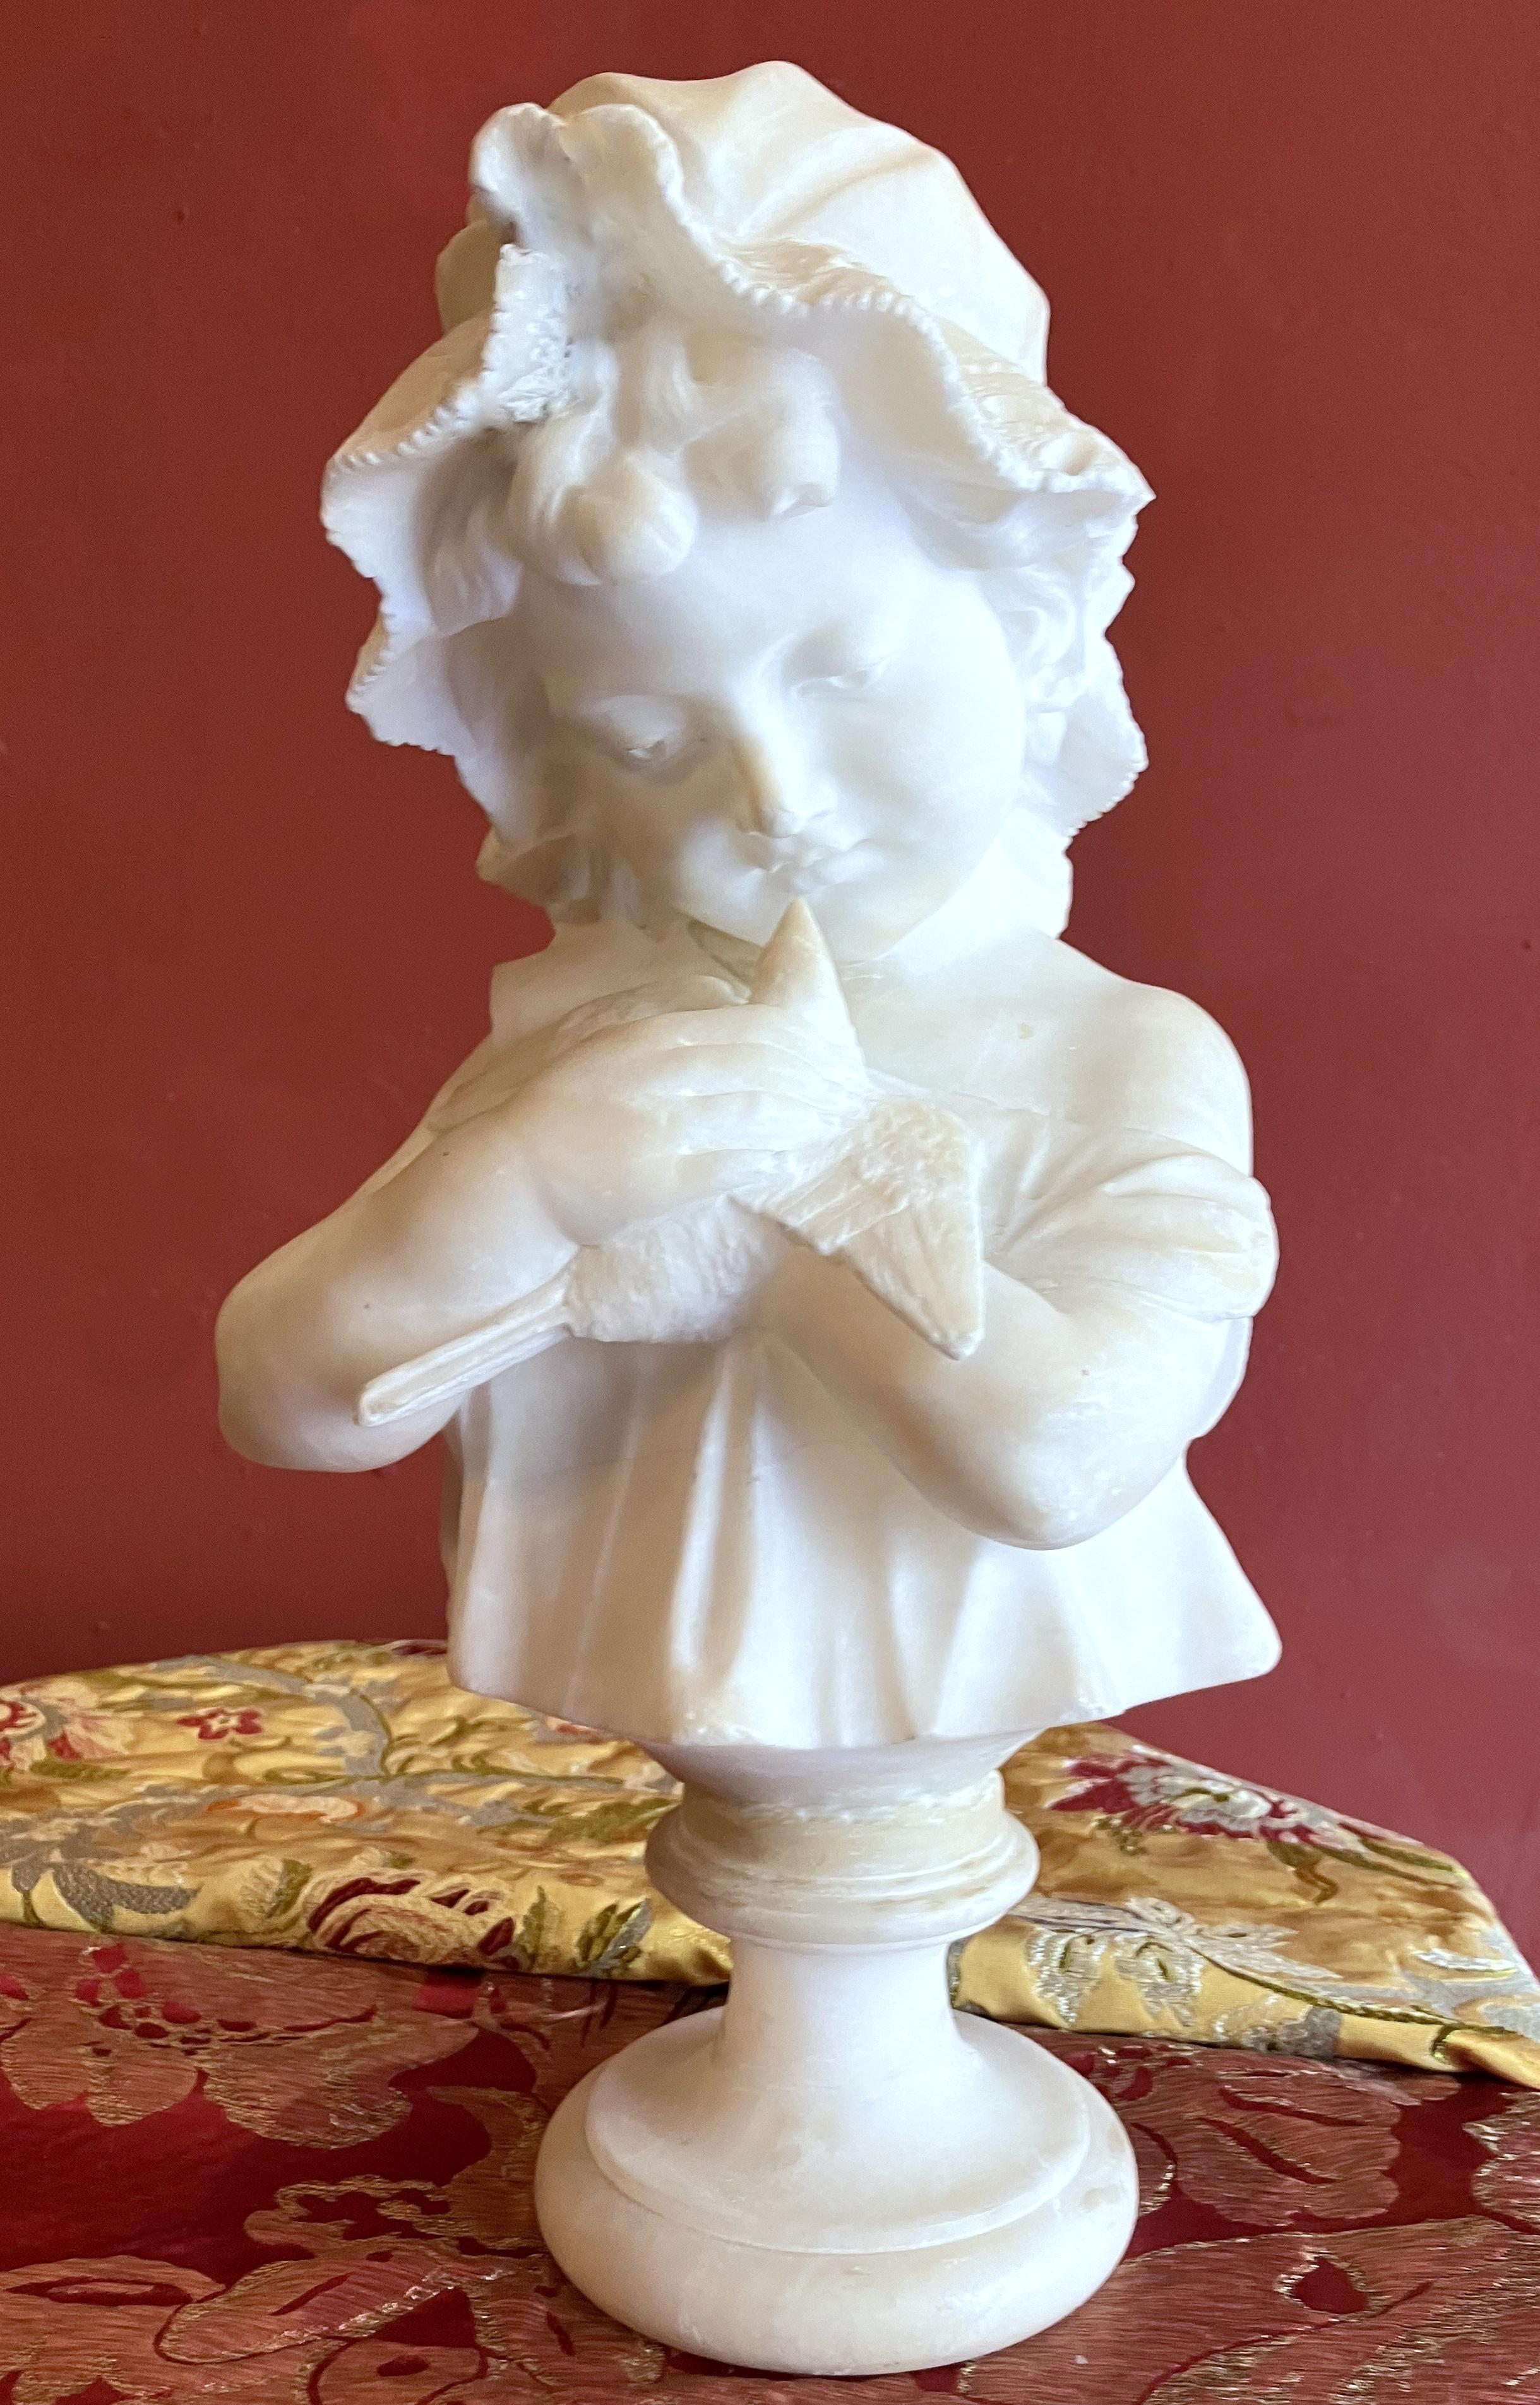 Superbe buste en albâtre italien de la fin du XIXe siècle et du début du XXe siècle, sculpté à la main, représentant une jeune fille berçant une colombe. 
La jeune fille porte un bonnet de dentelle, ses cheveux sont attachés et des mèches bouclées